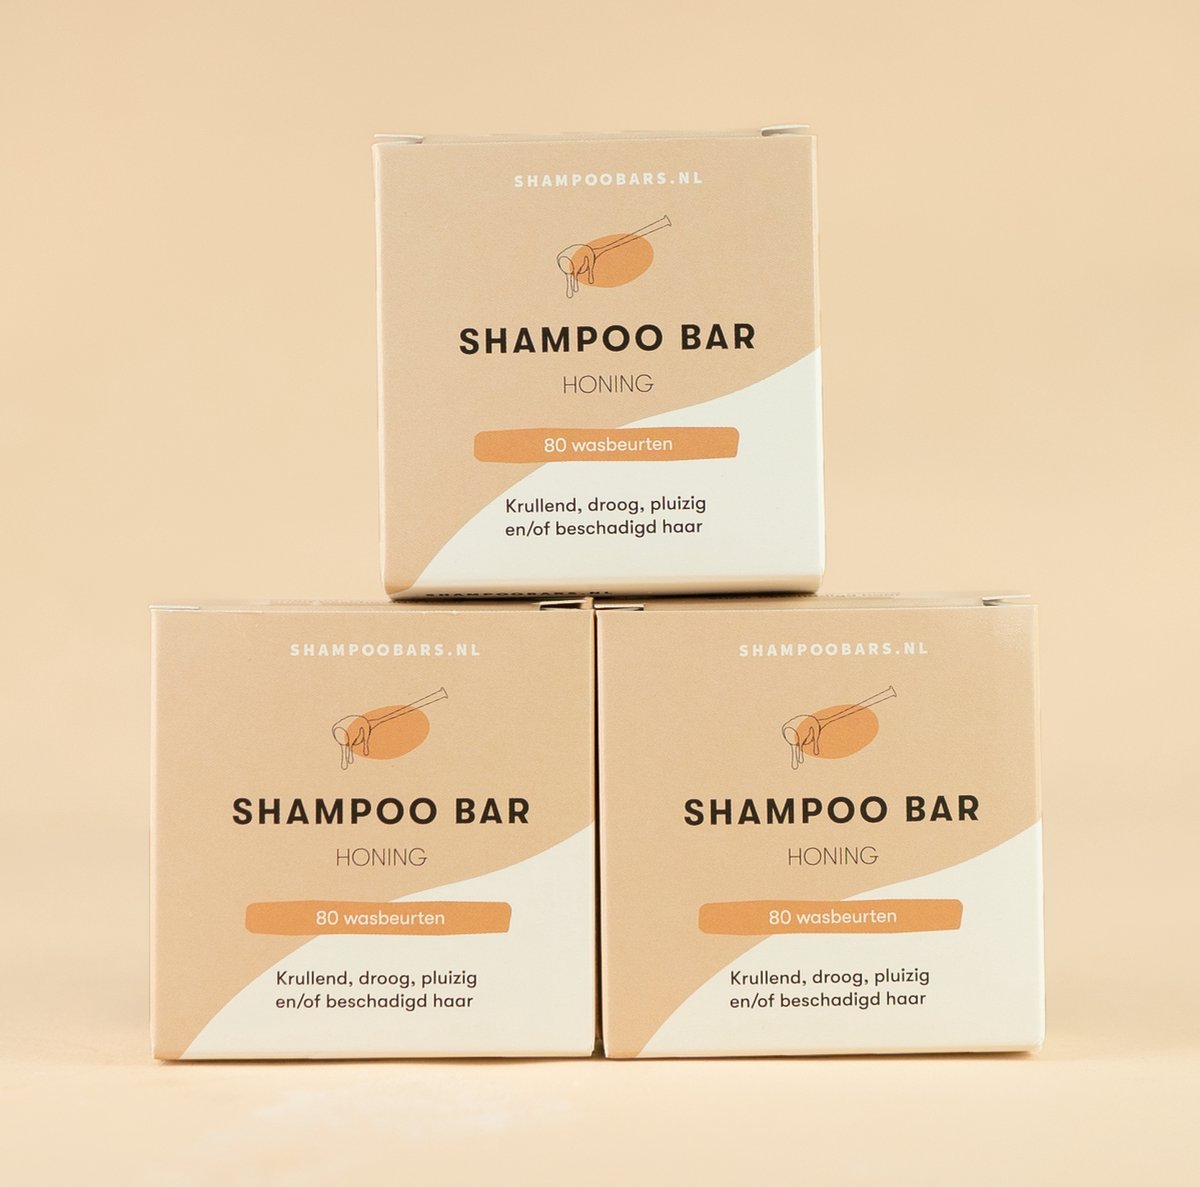 3x Shampoo Bar Honing + Magnetische Houder bundel | Handgemaakt in Nederland | CG-proof | 100% biologisch afbreekbare verpakking